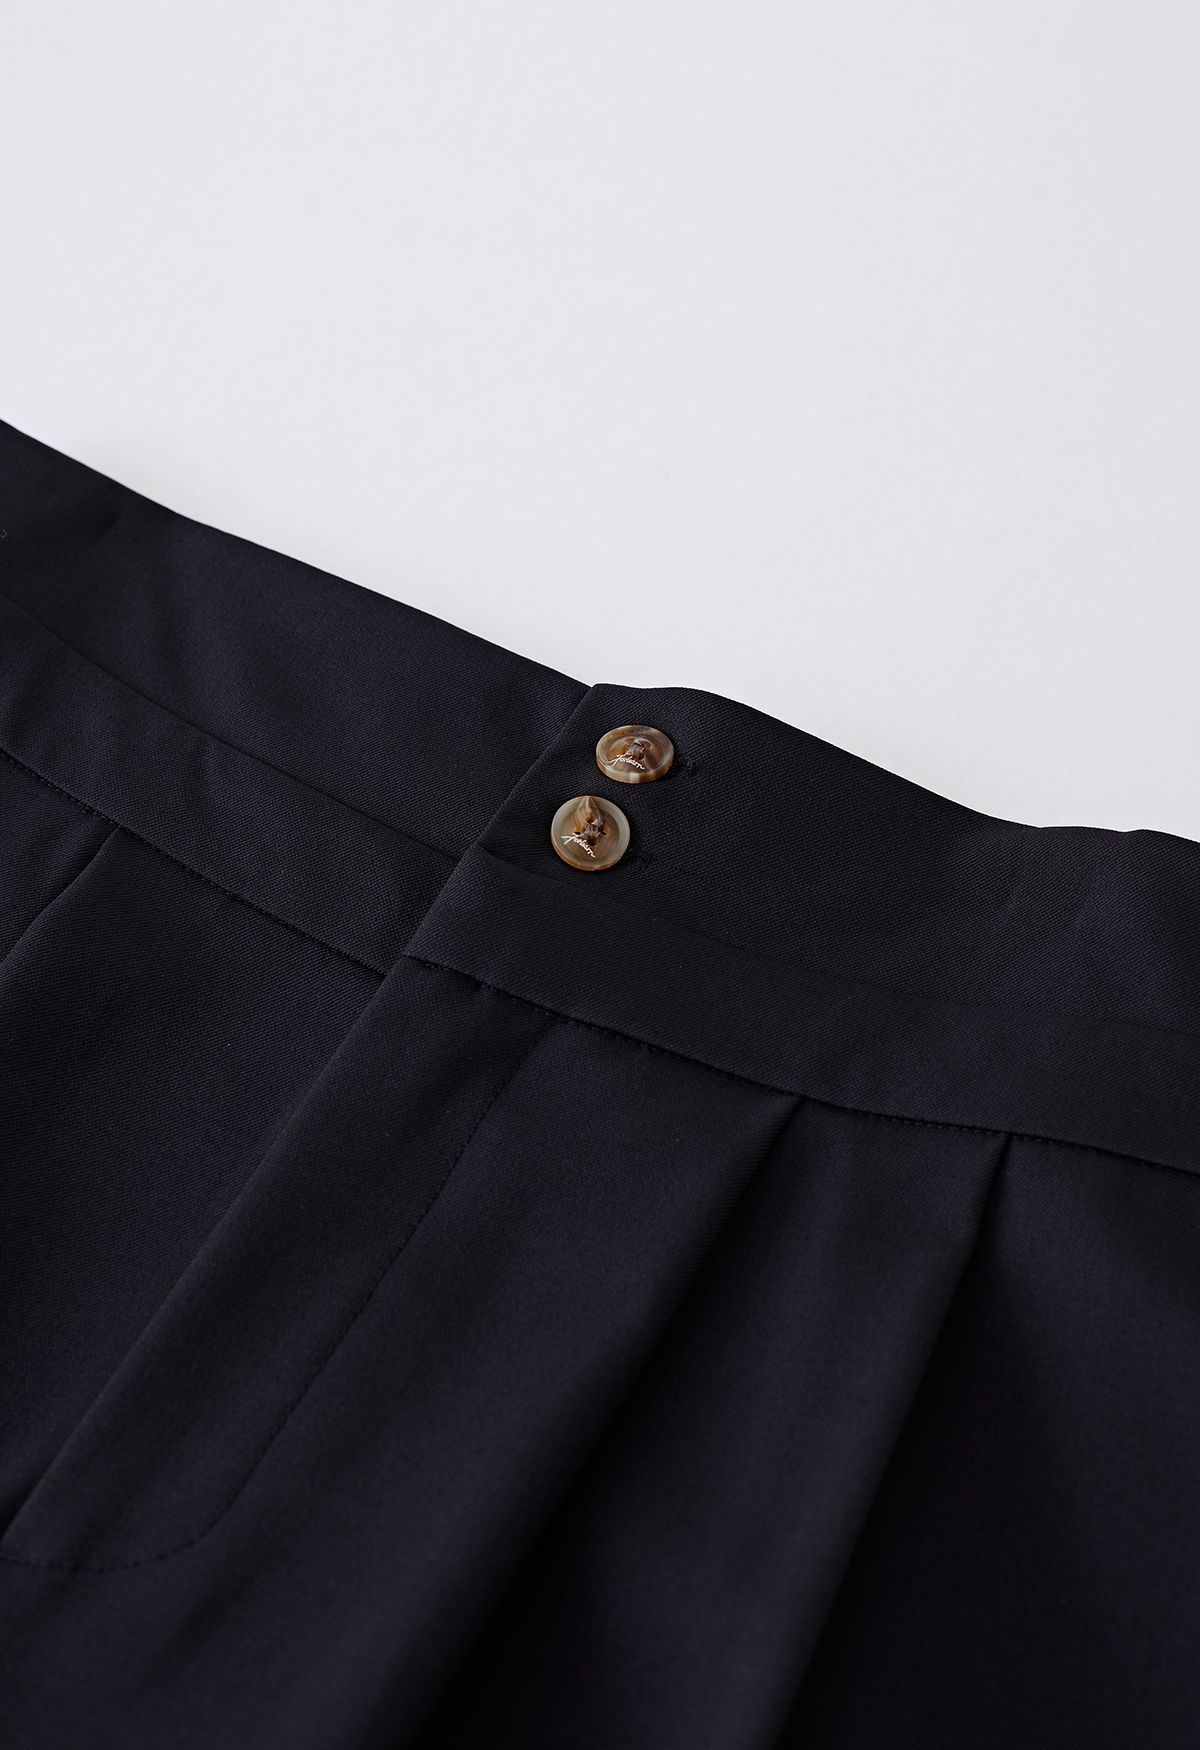 Pantalon large à plis subtils en noir